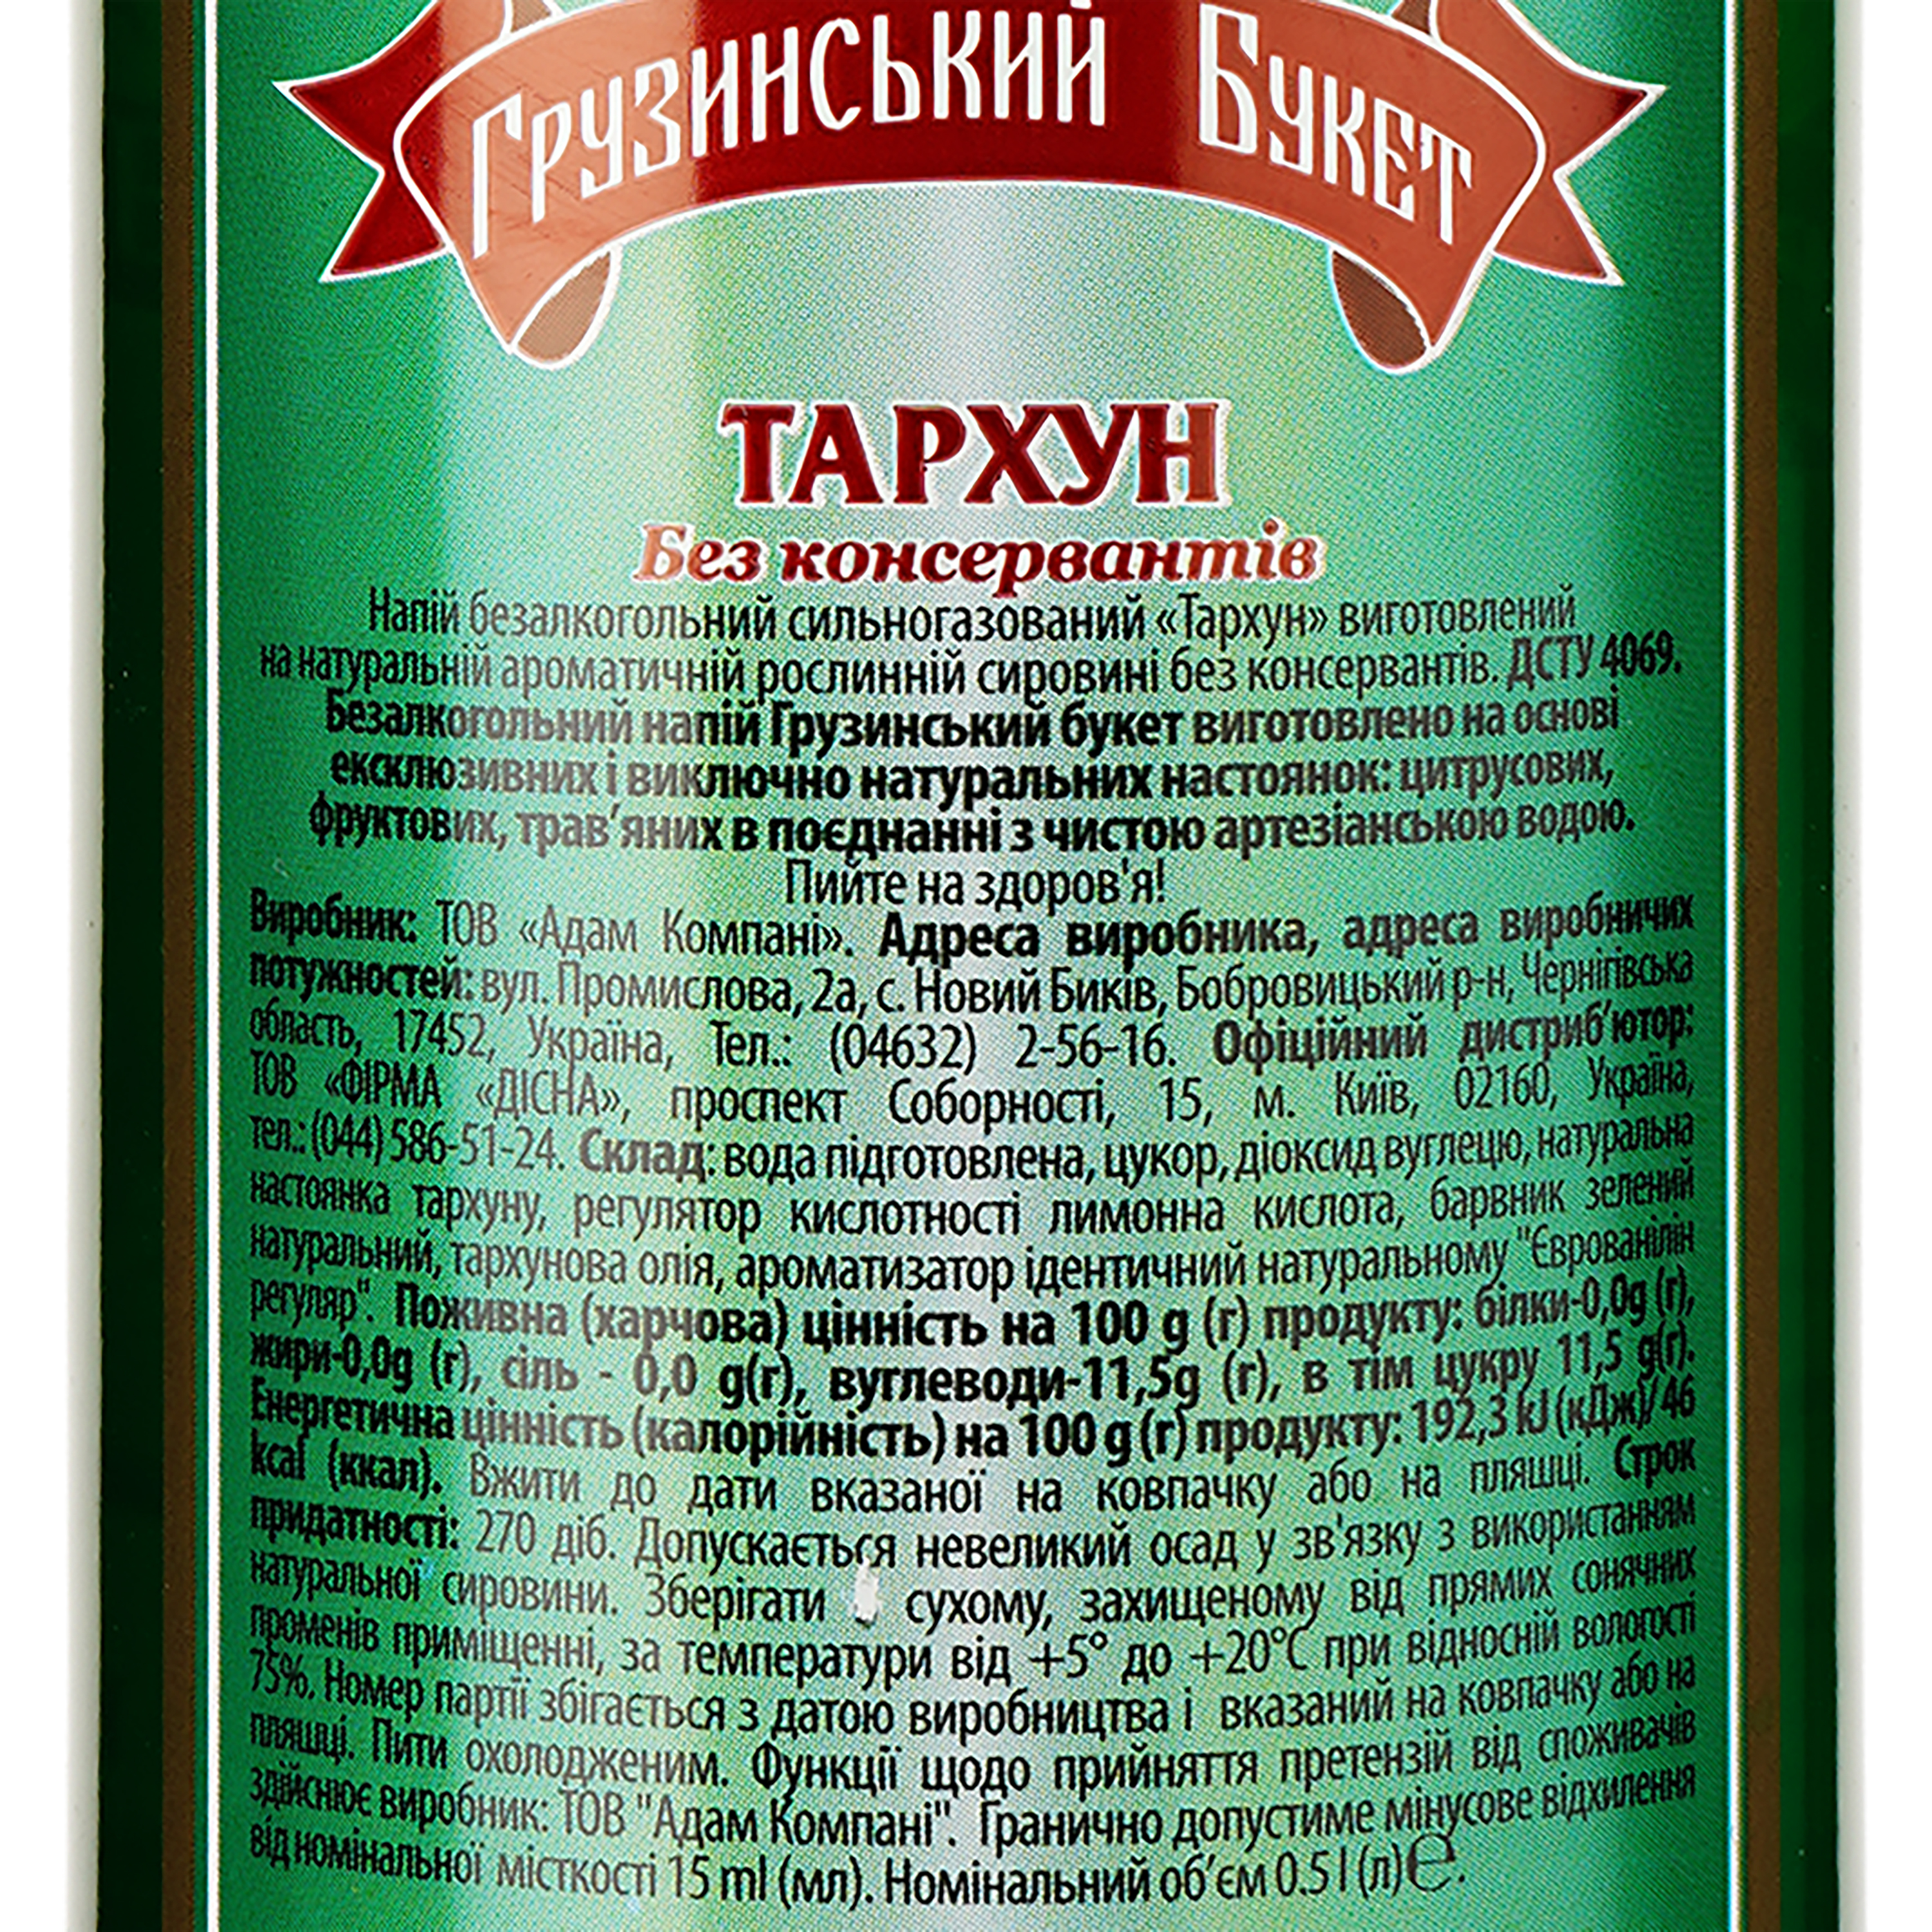 Напиток Грузинский букет со вкусом Тархун безалкогольный 0.5 л (364039) - фото 5